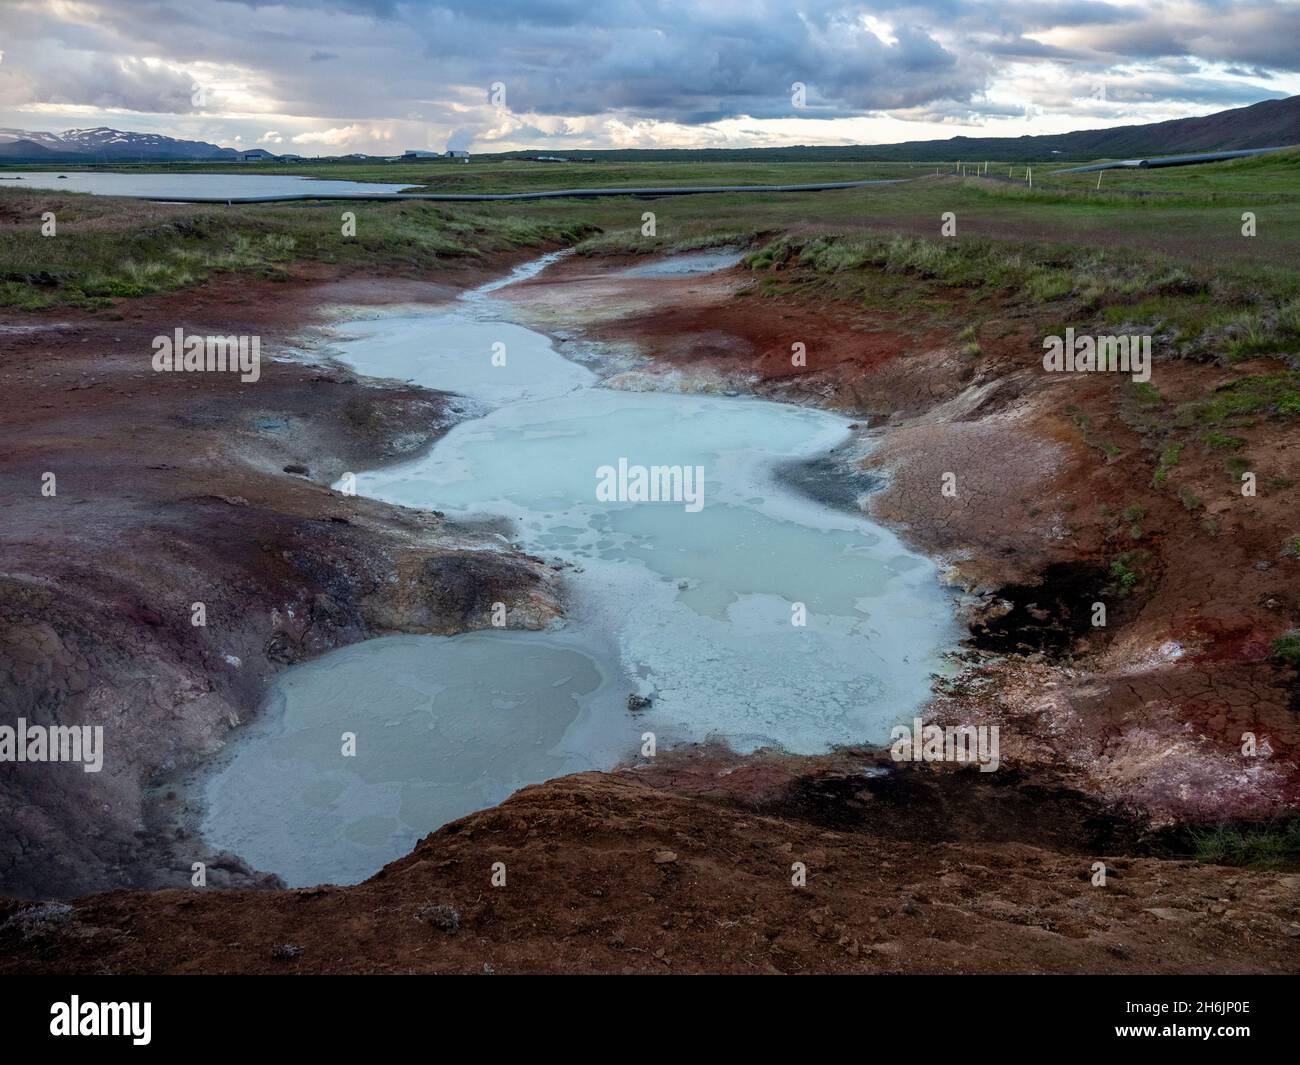 Pots de boue géothermiques situés juste à l'extérieur de la ville de Husvik, sur la côte nord de l'Islande, régions polaires Banque D'Images